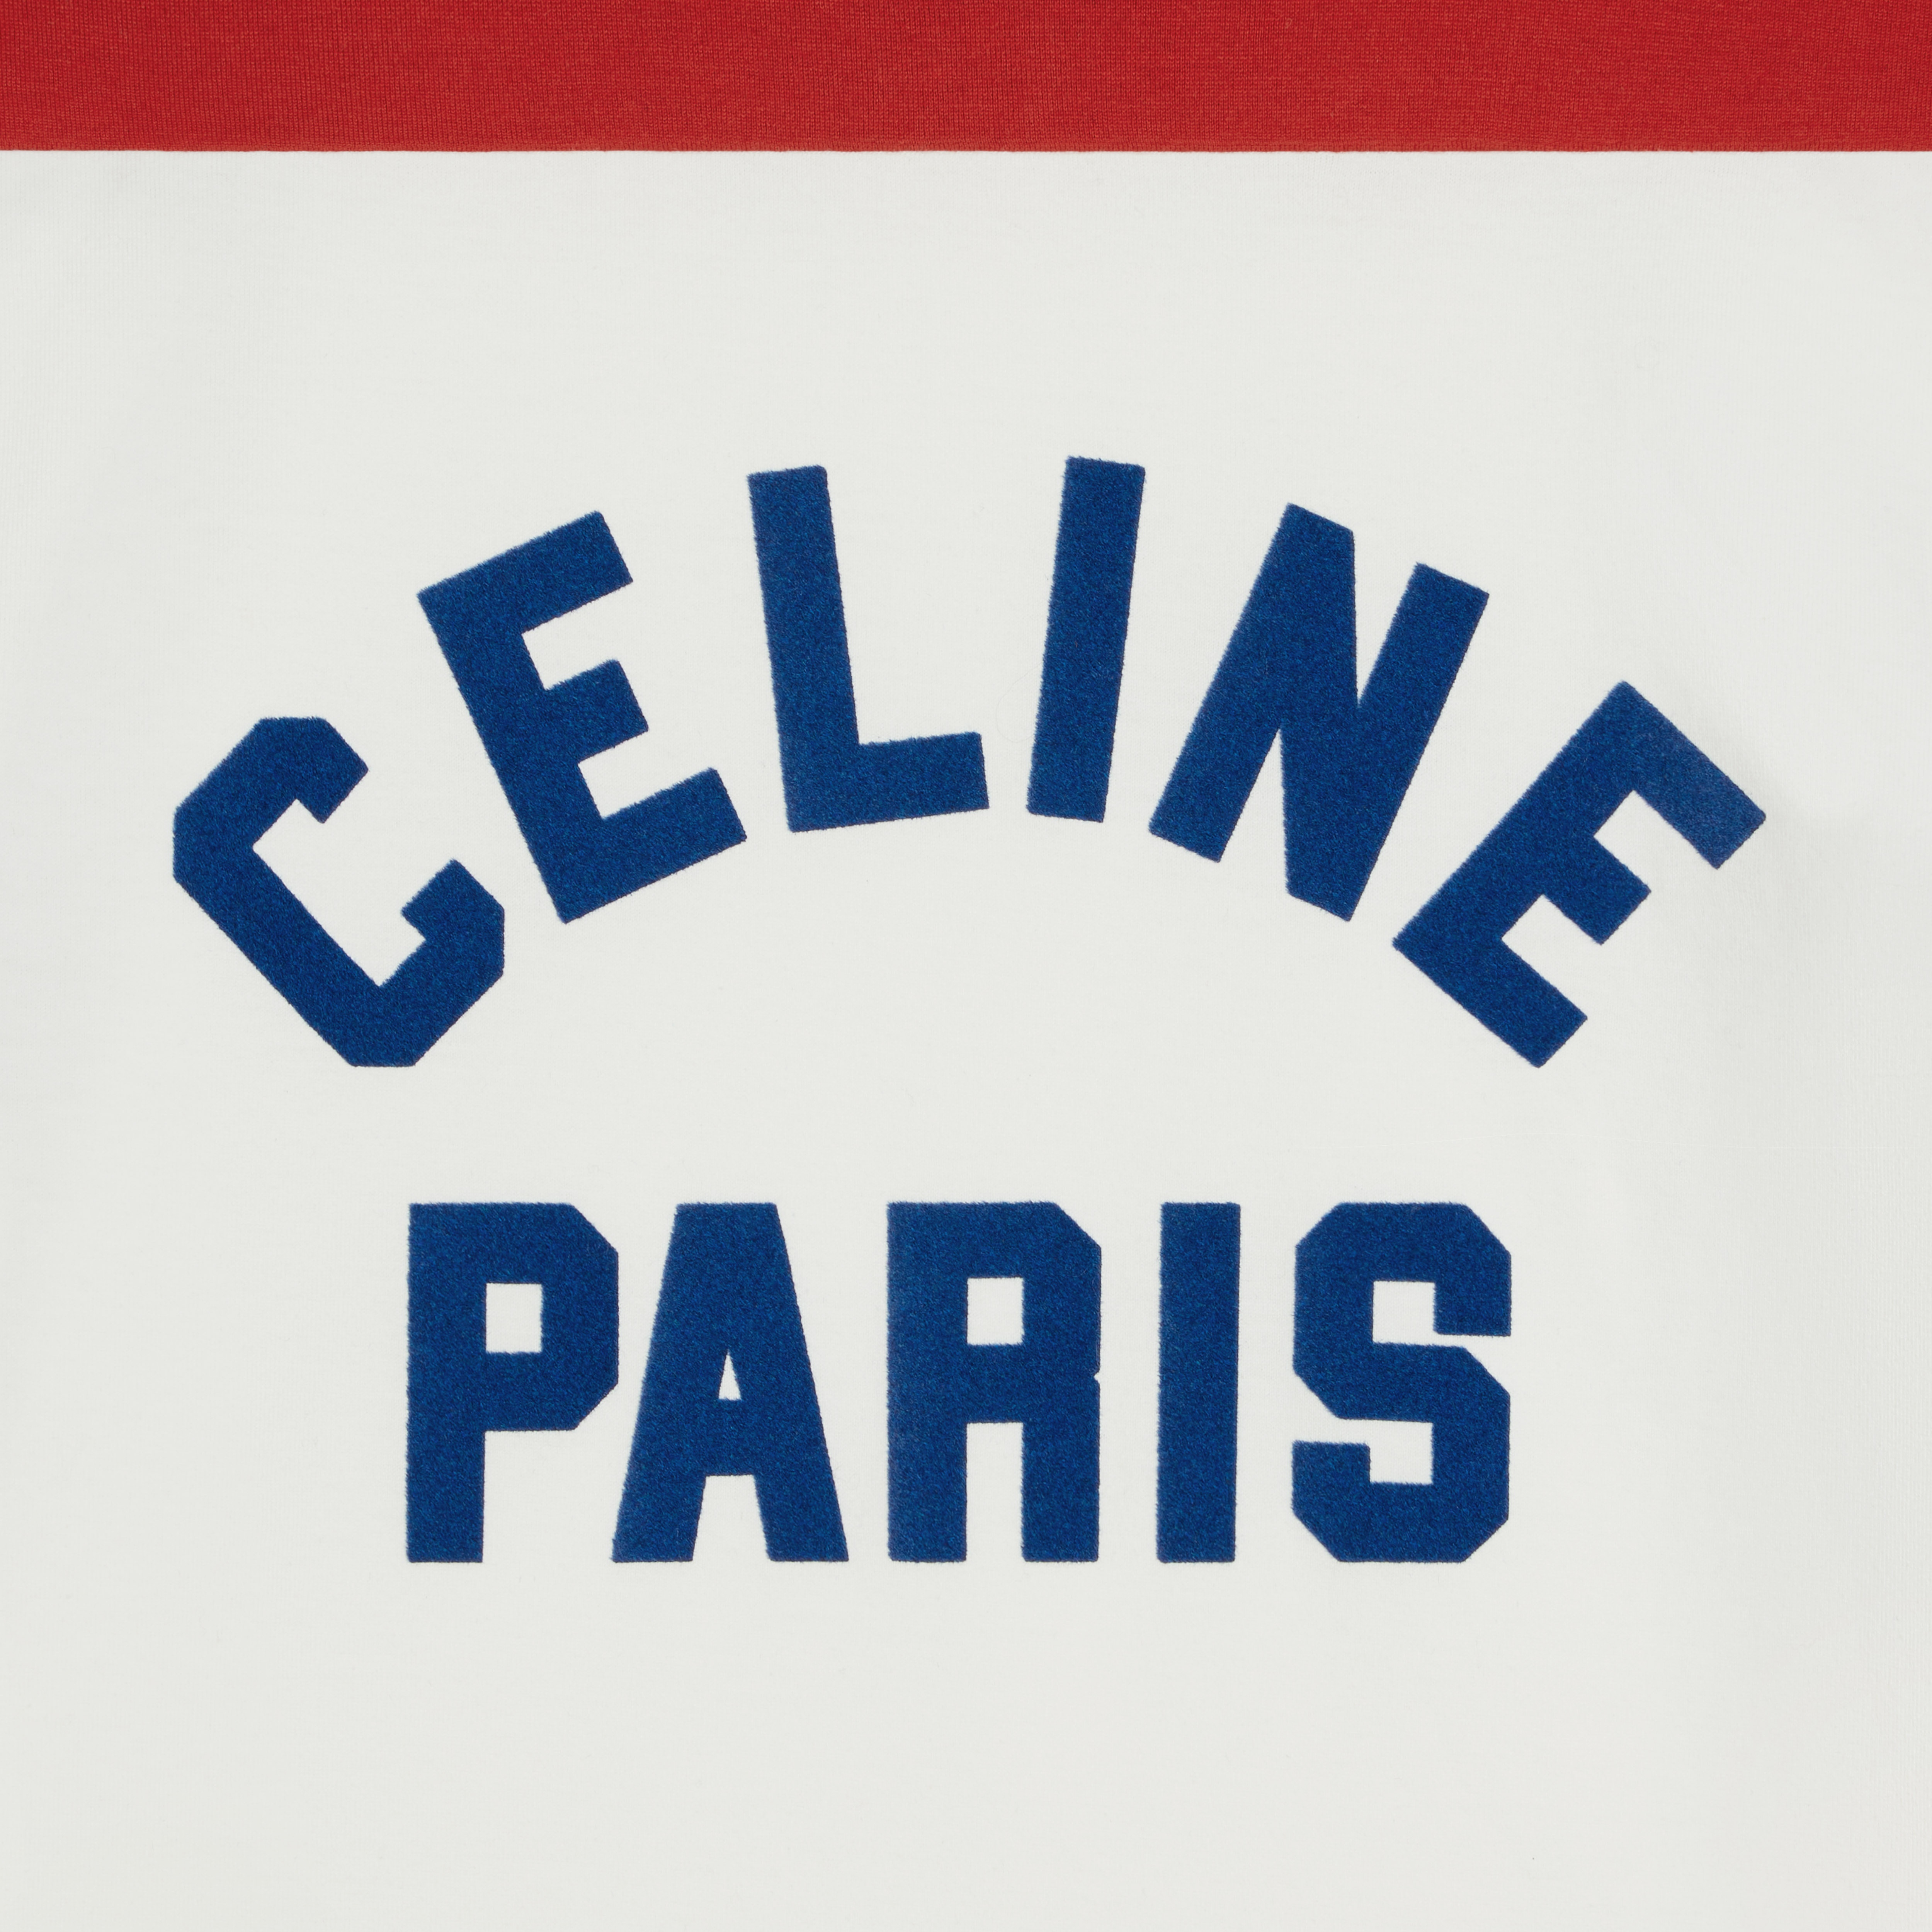 celine paris boxy T-shirt in cotton jersey